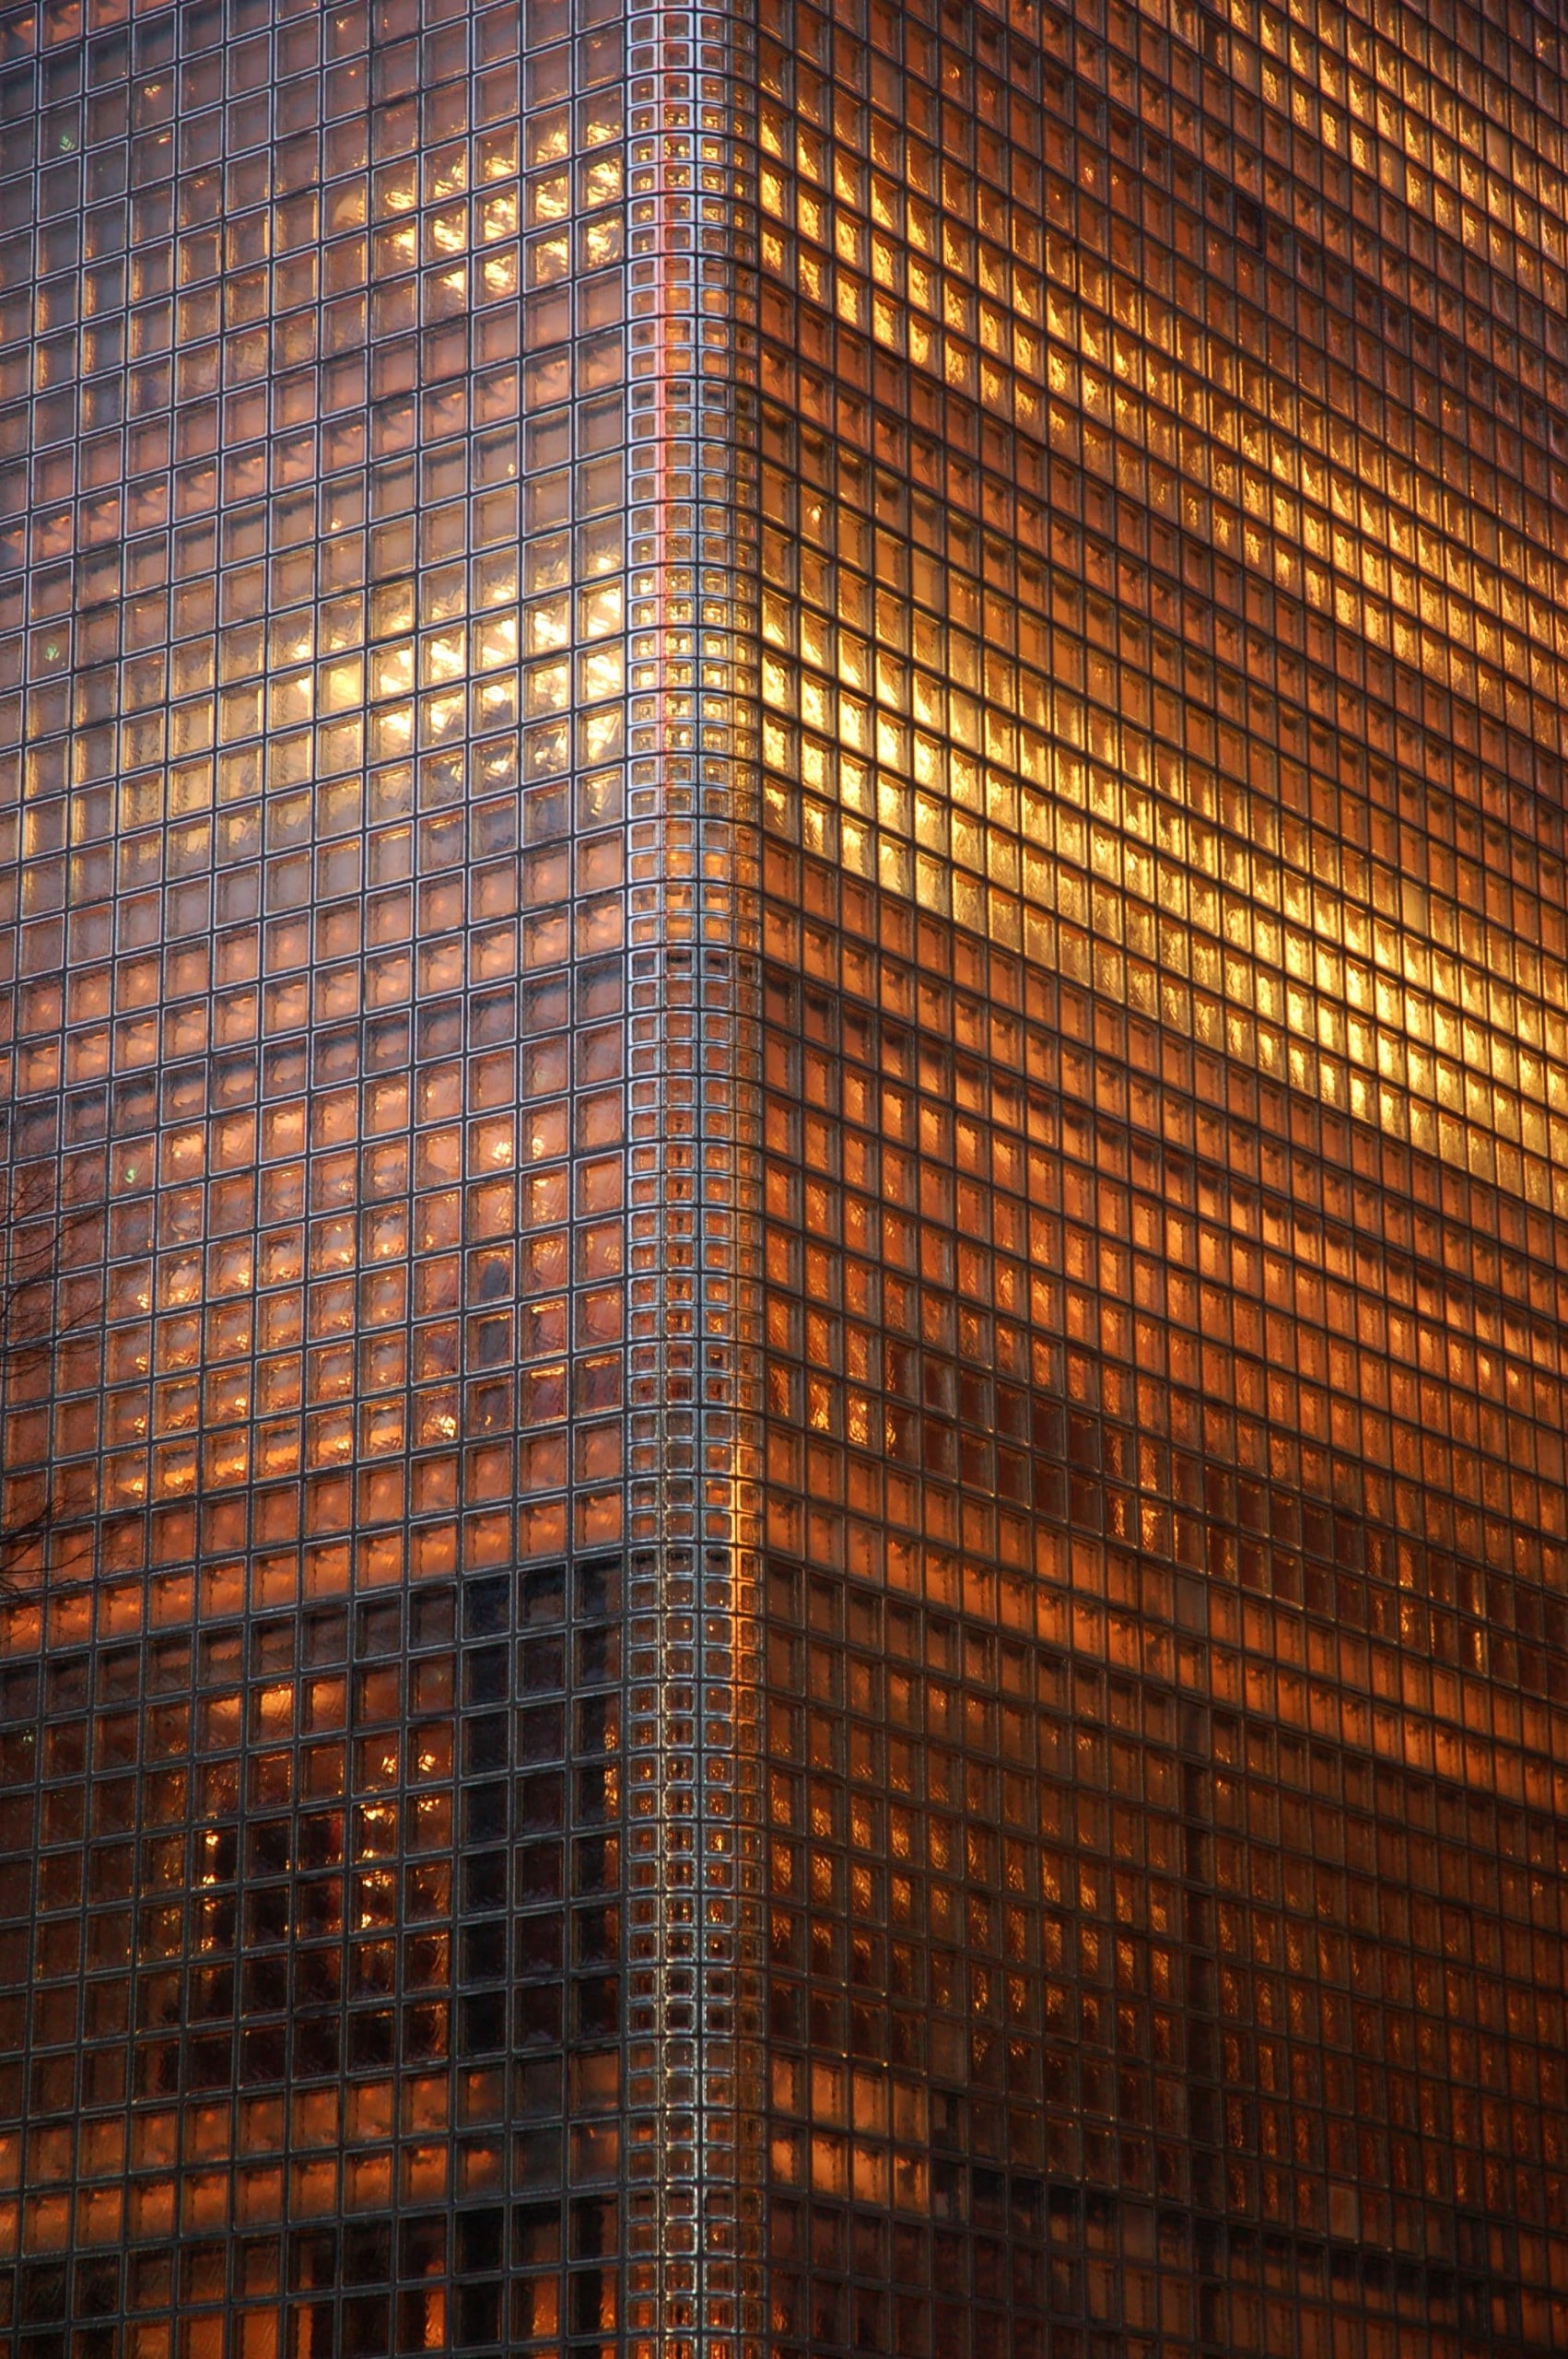 Detail eines Fassade, die vollständig aus orange leuchtenden Glasbausteinen besteht. Renzo Piano, Maison Hermès, Tokio, Detail, Foto: japanese_craft_construction, CC BY 2.0, via flickr